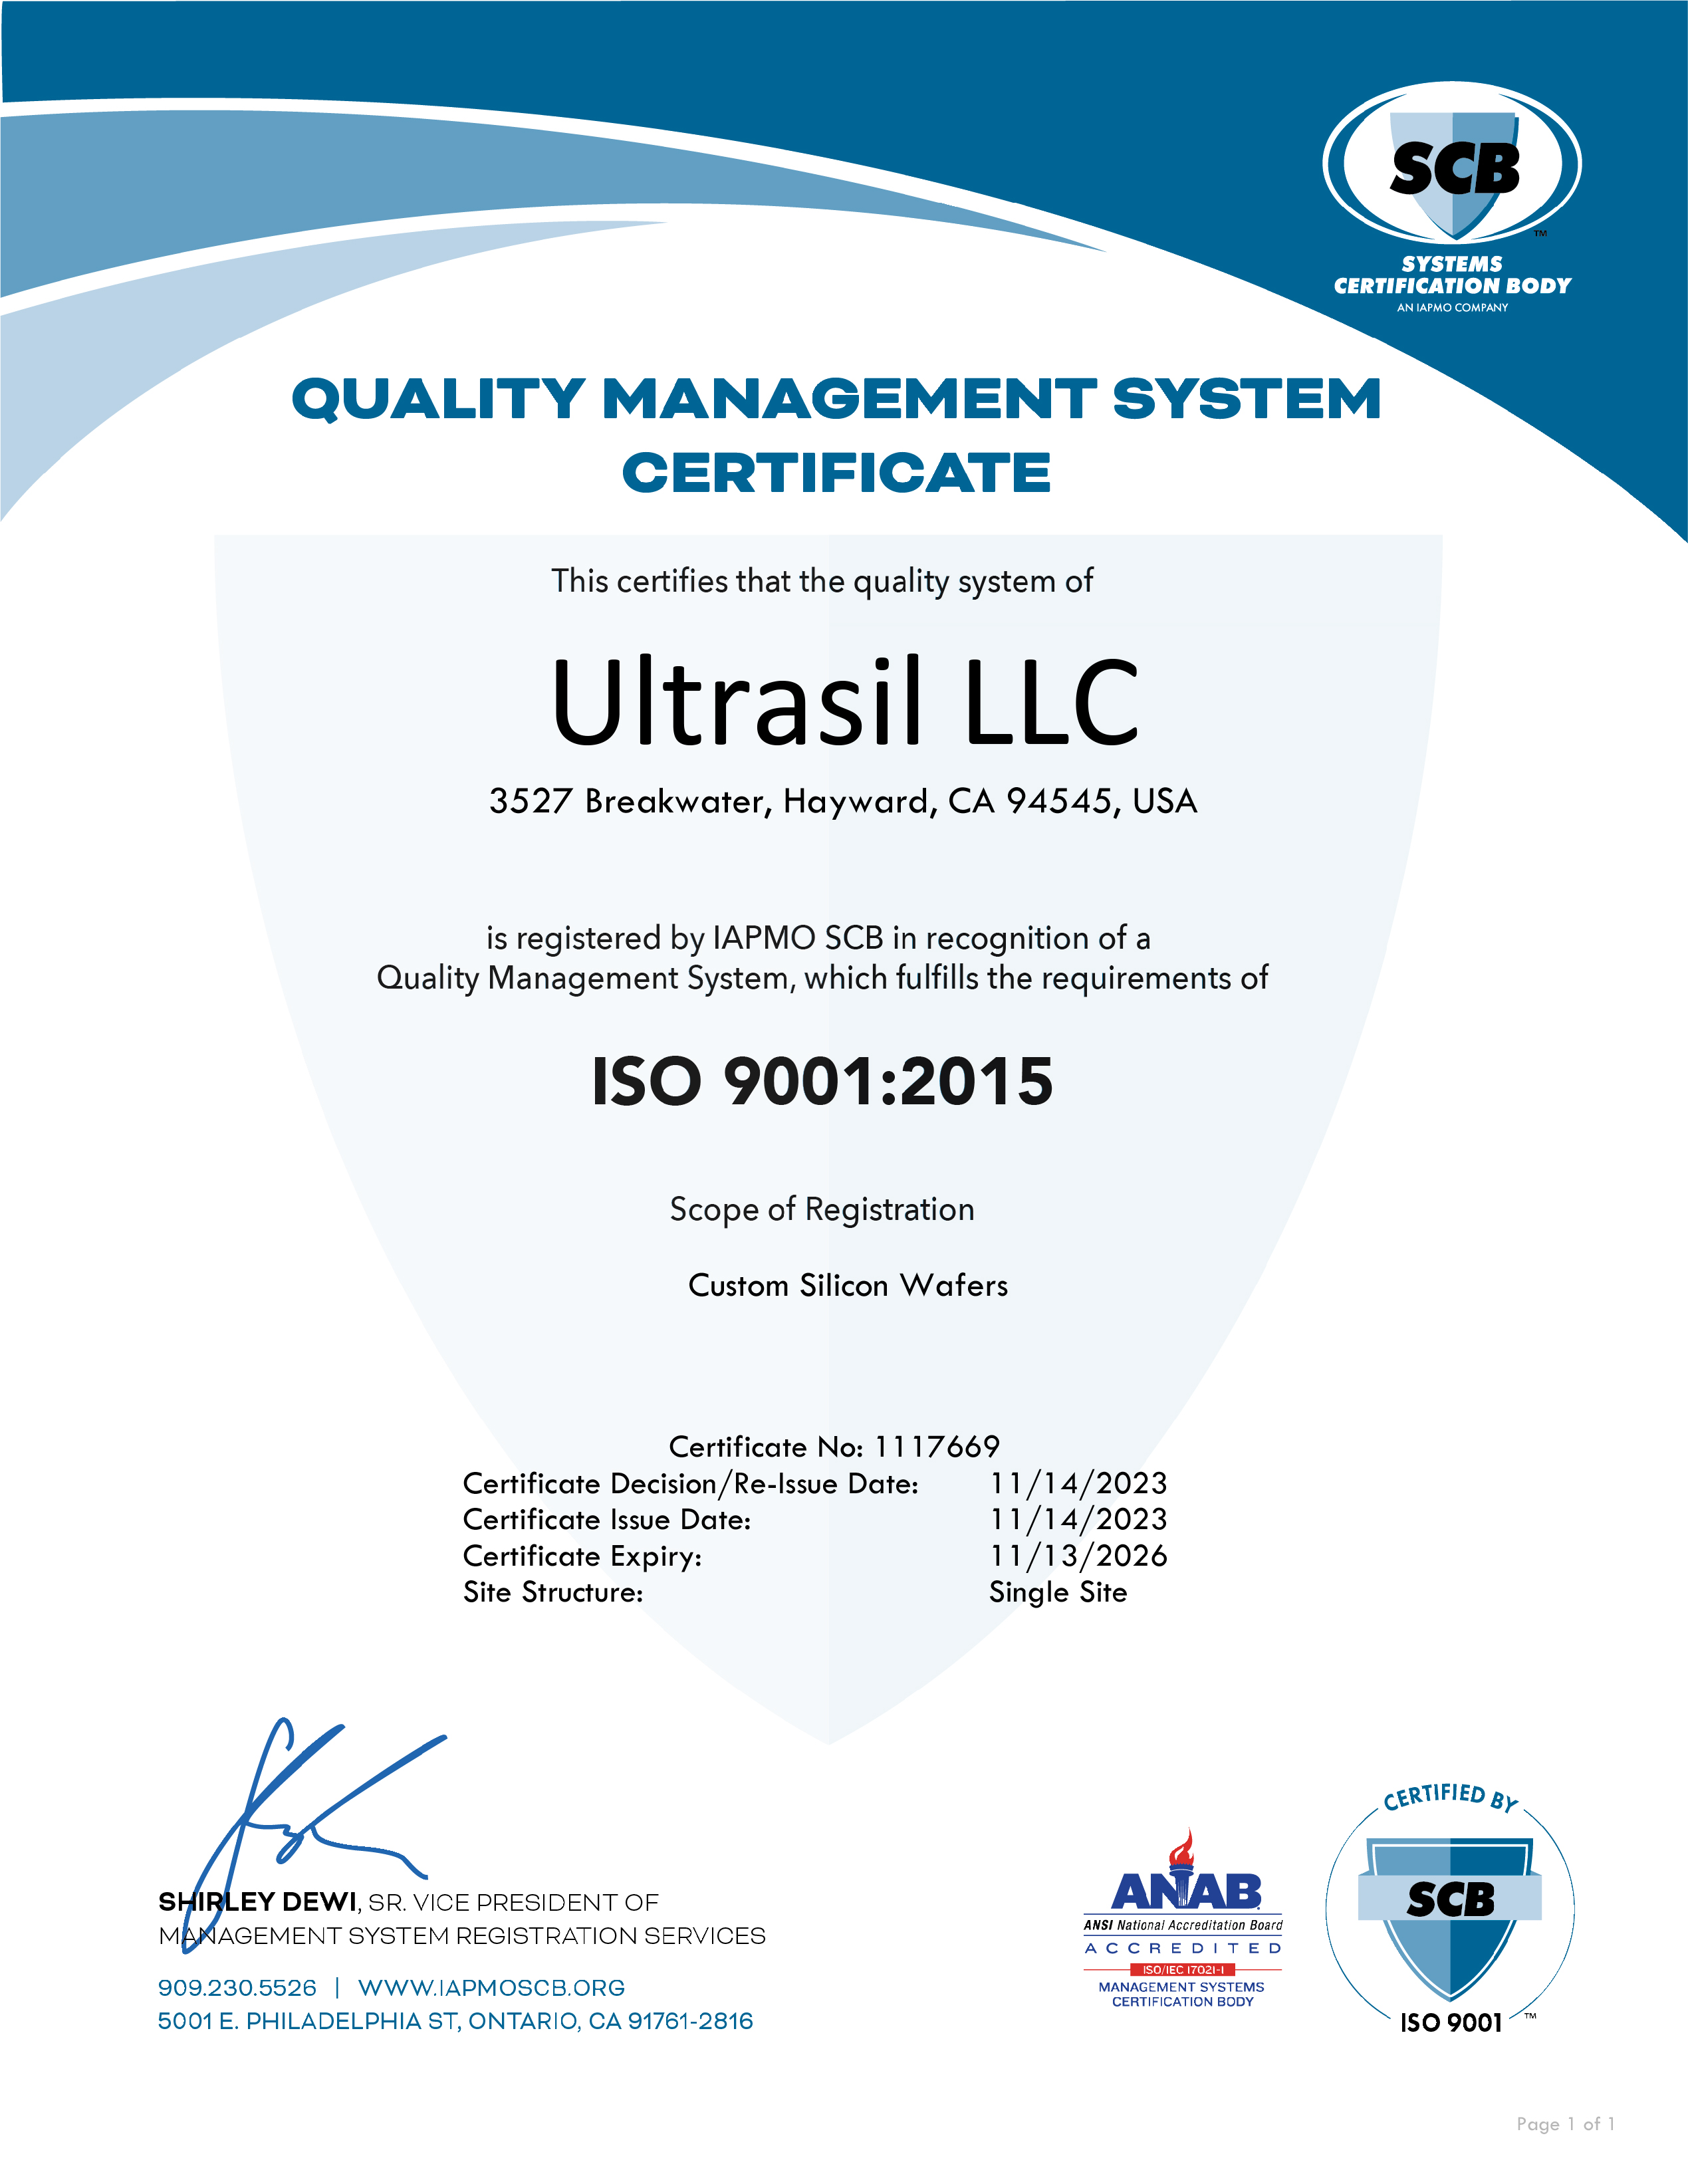 ultrasil-llc-iso-9001-2015-certificate-2023-1